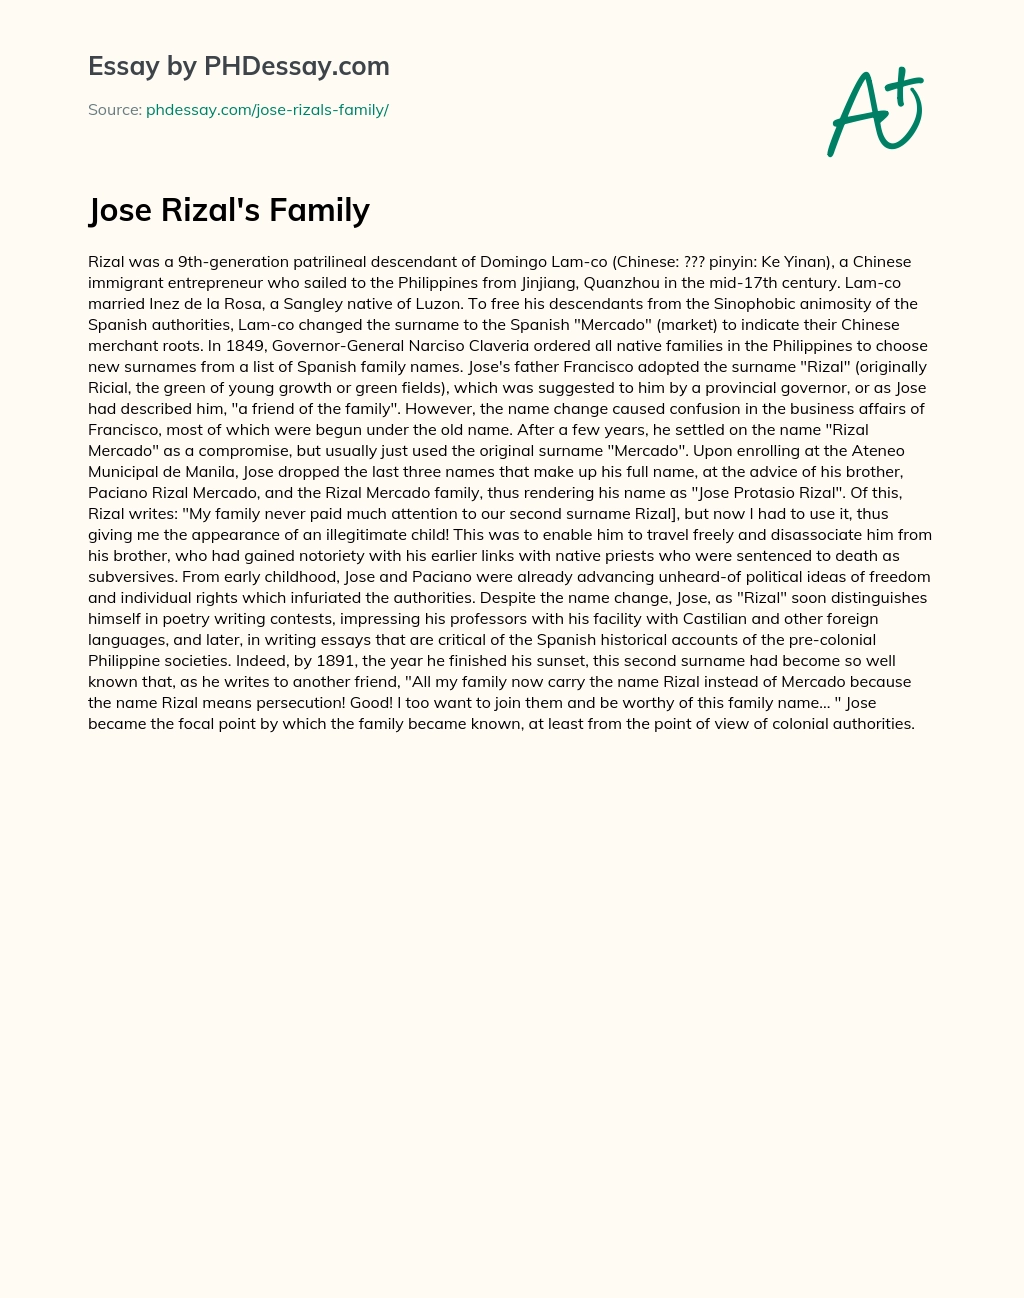 Jose Rizal’s Family essay